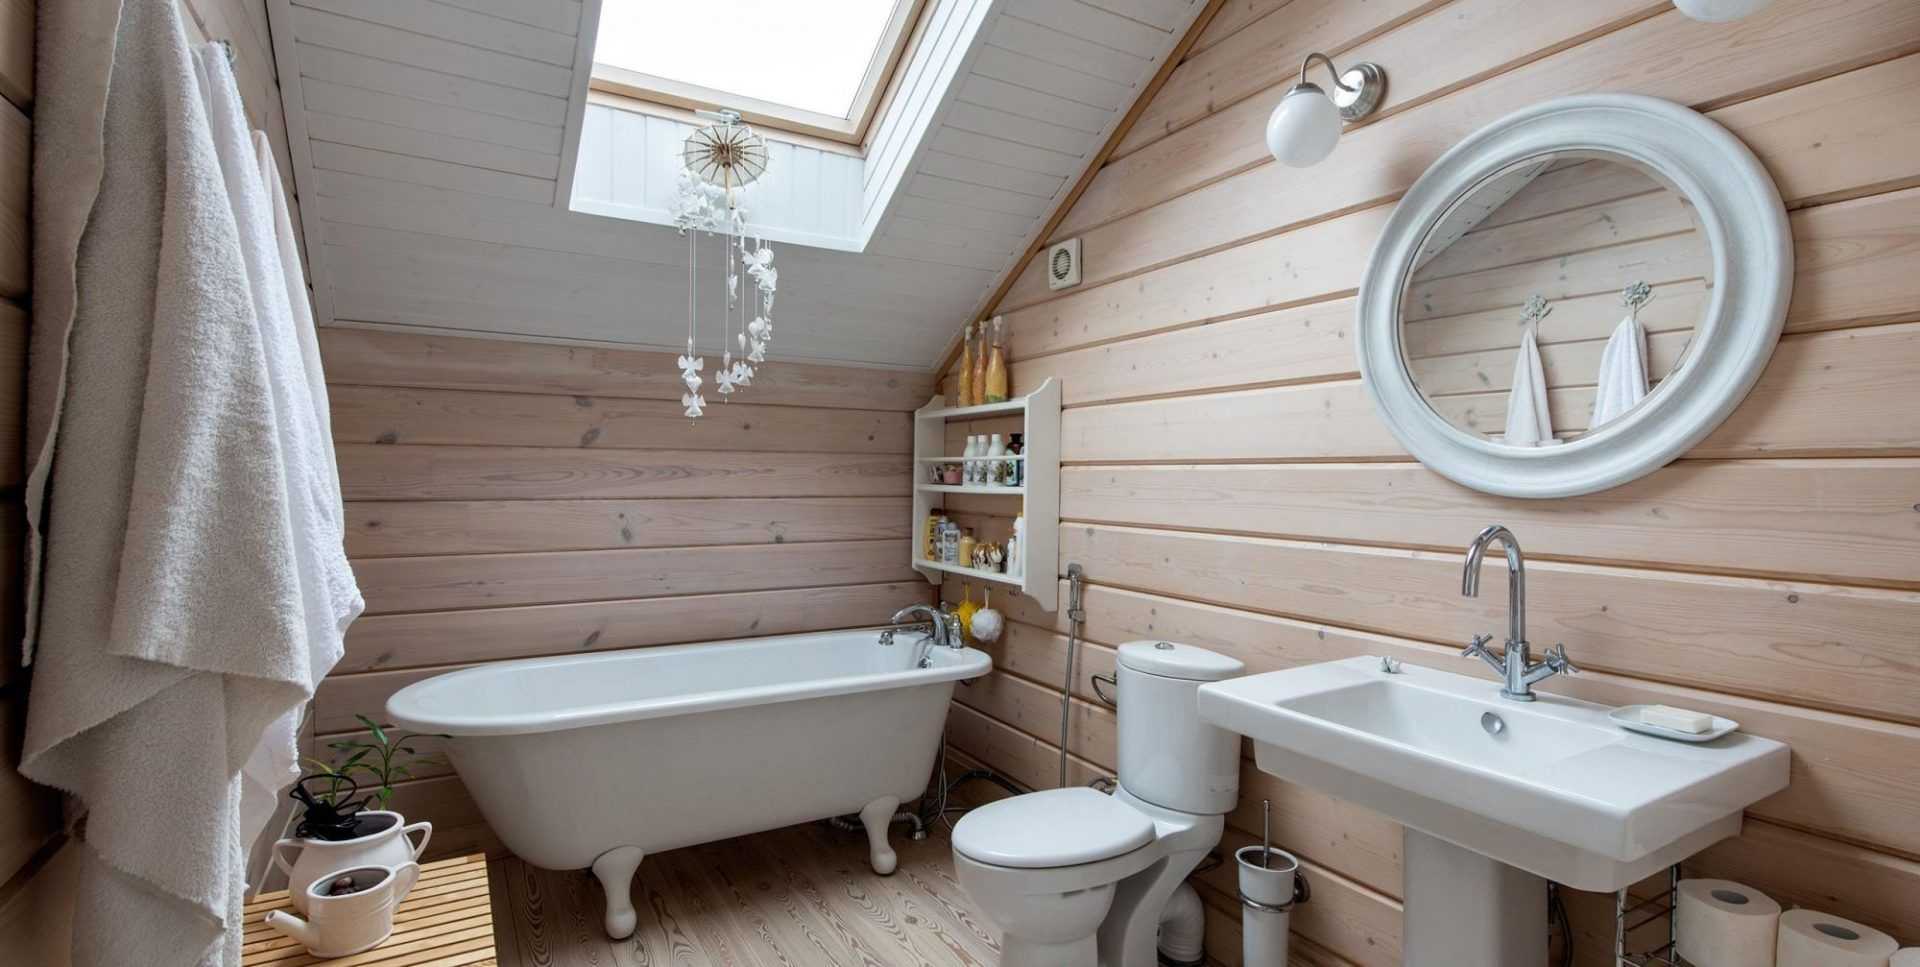 Ванная комната своими руками на даче: этапы обустройства, отделка, защитная обработка, выбор дизайна, оформление помещения